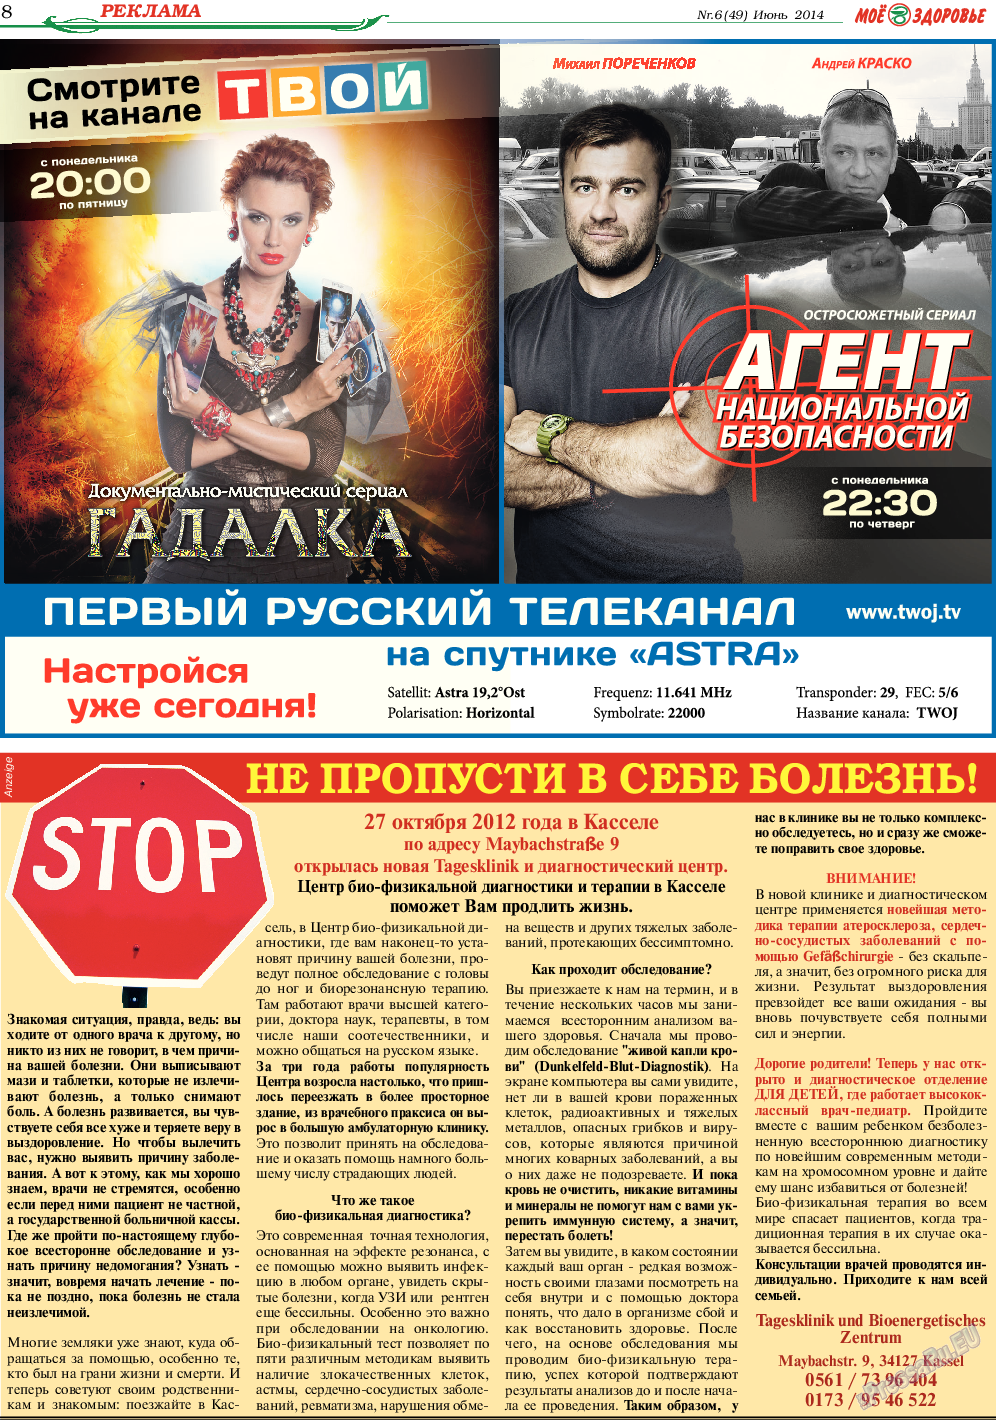 Кругозор, газета. 2014 №6 стр.8